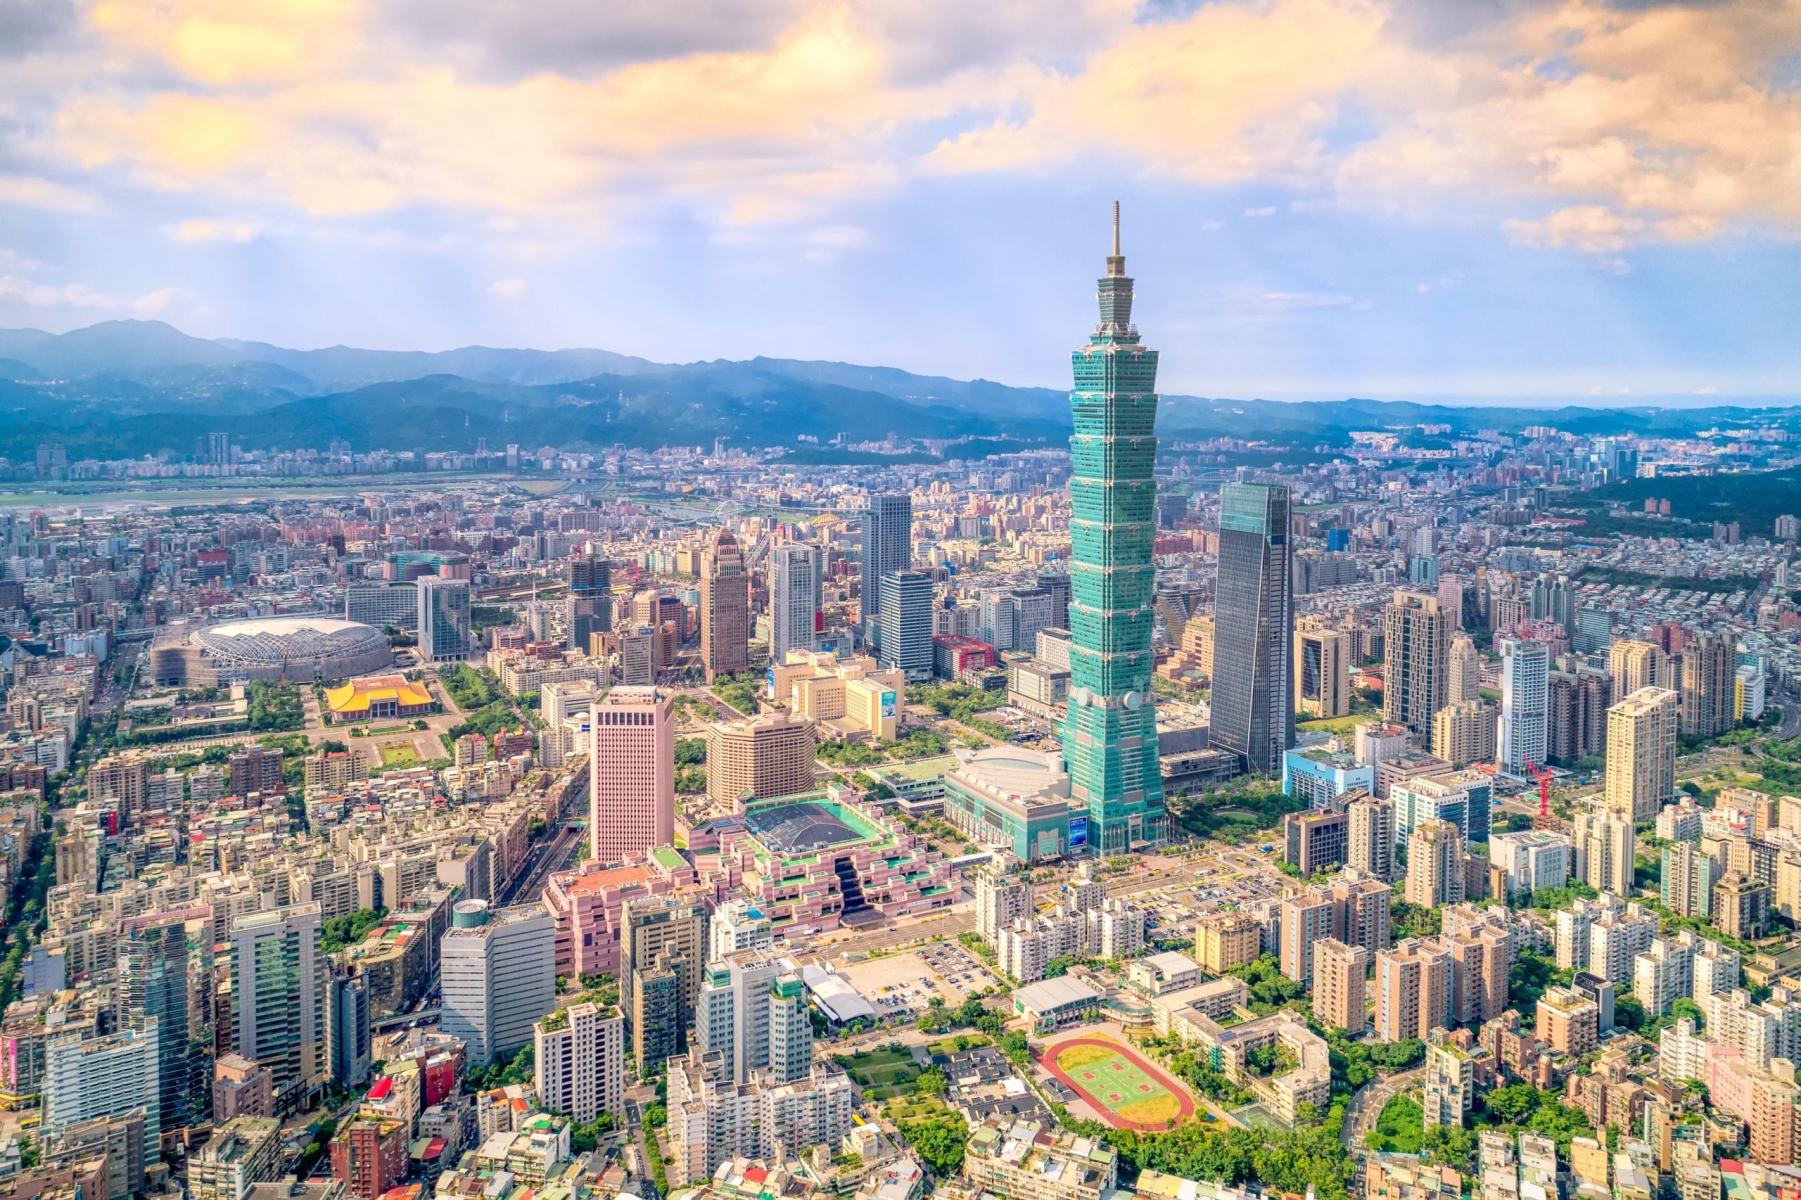 Đài Loan tuy nhỏ nhưng lại là ước mơ của bao sinh viên quốc tế